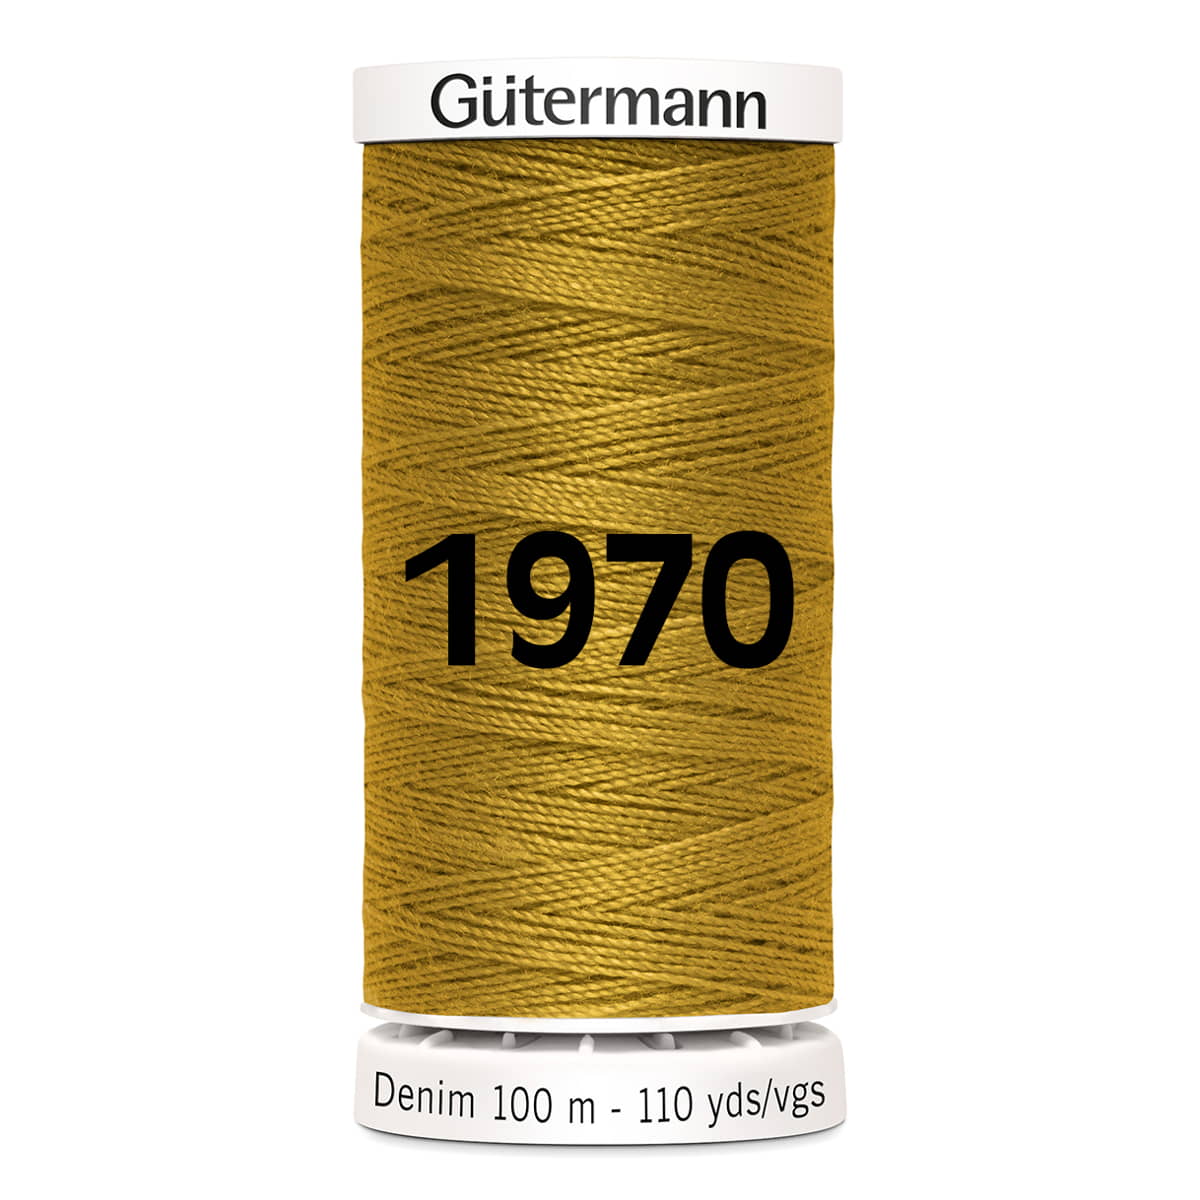 Gutermann jeans - demin naaigaren | 100m | 1970 goud naaigaren GM-DEMIN-1970 4029394471988